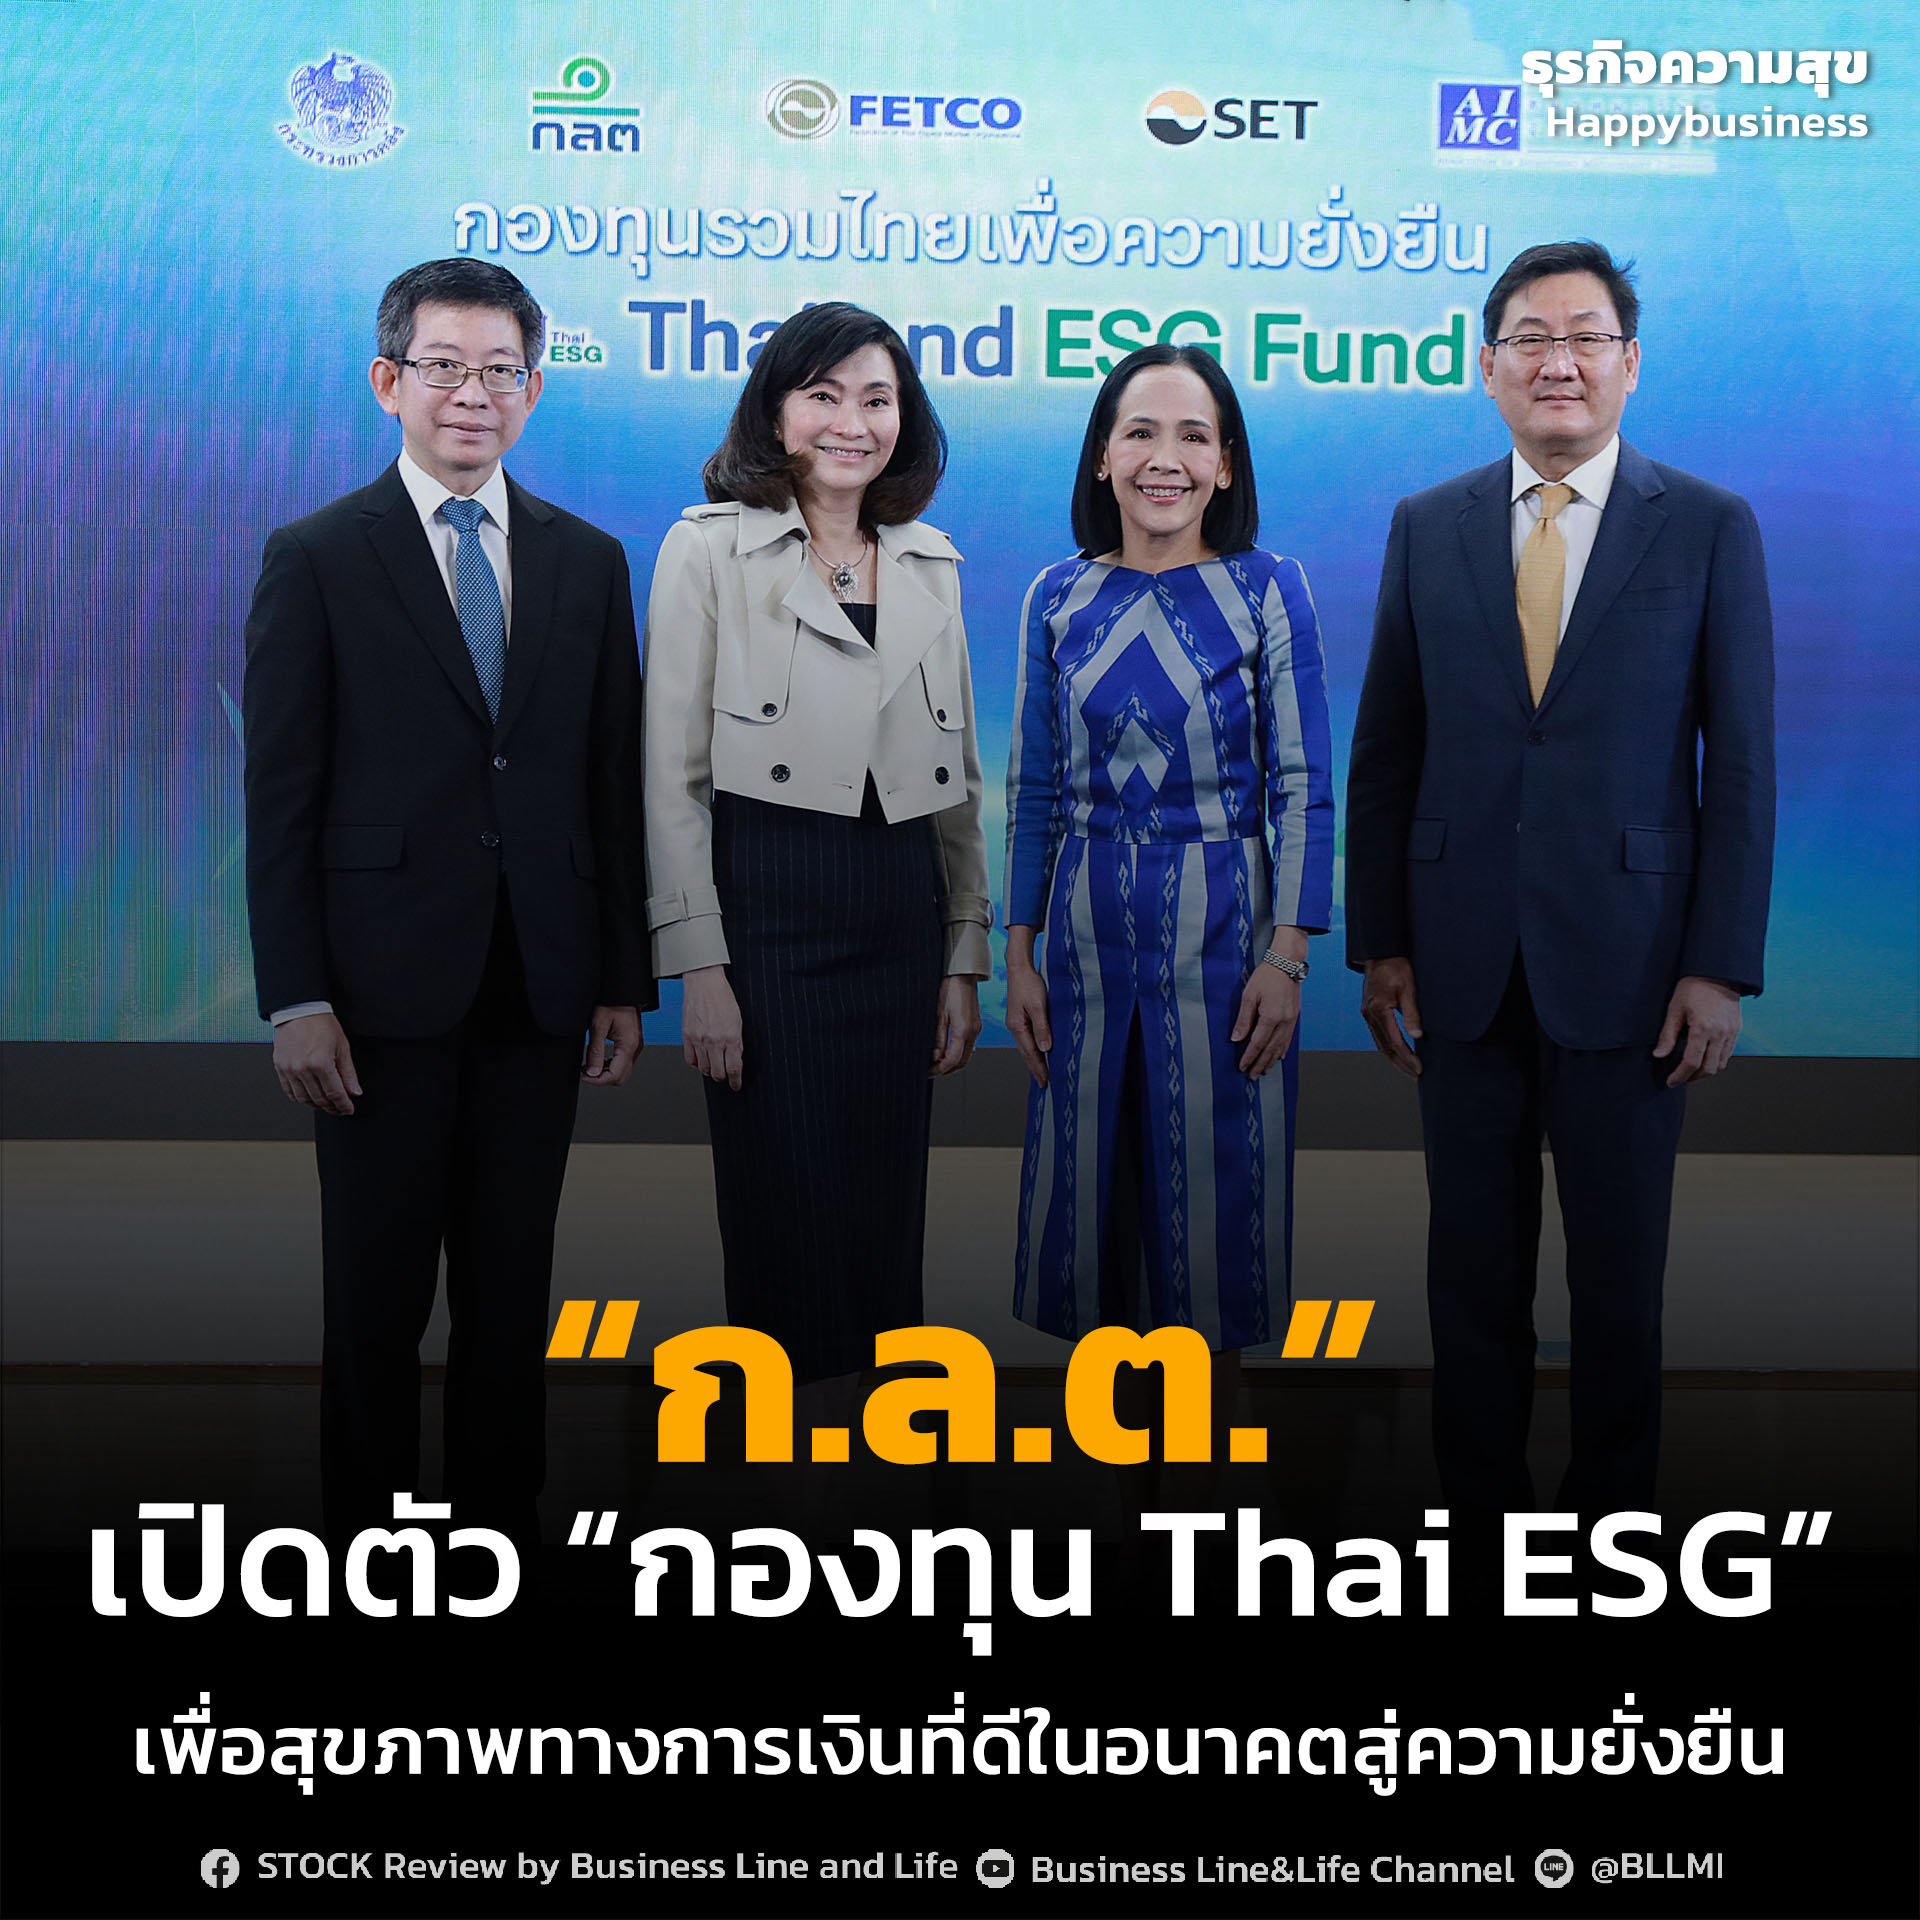 “ก.ล.ต.” เปิดตัว “กองทุน Thai ESG”เพื่อสุขภาพทางการเงินที่ดีในอนาคตสู่ความยั่งยืน